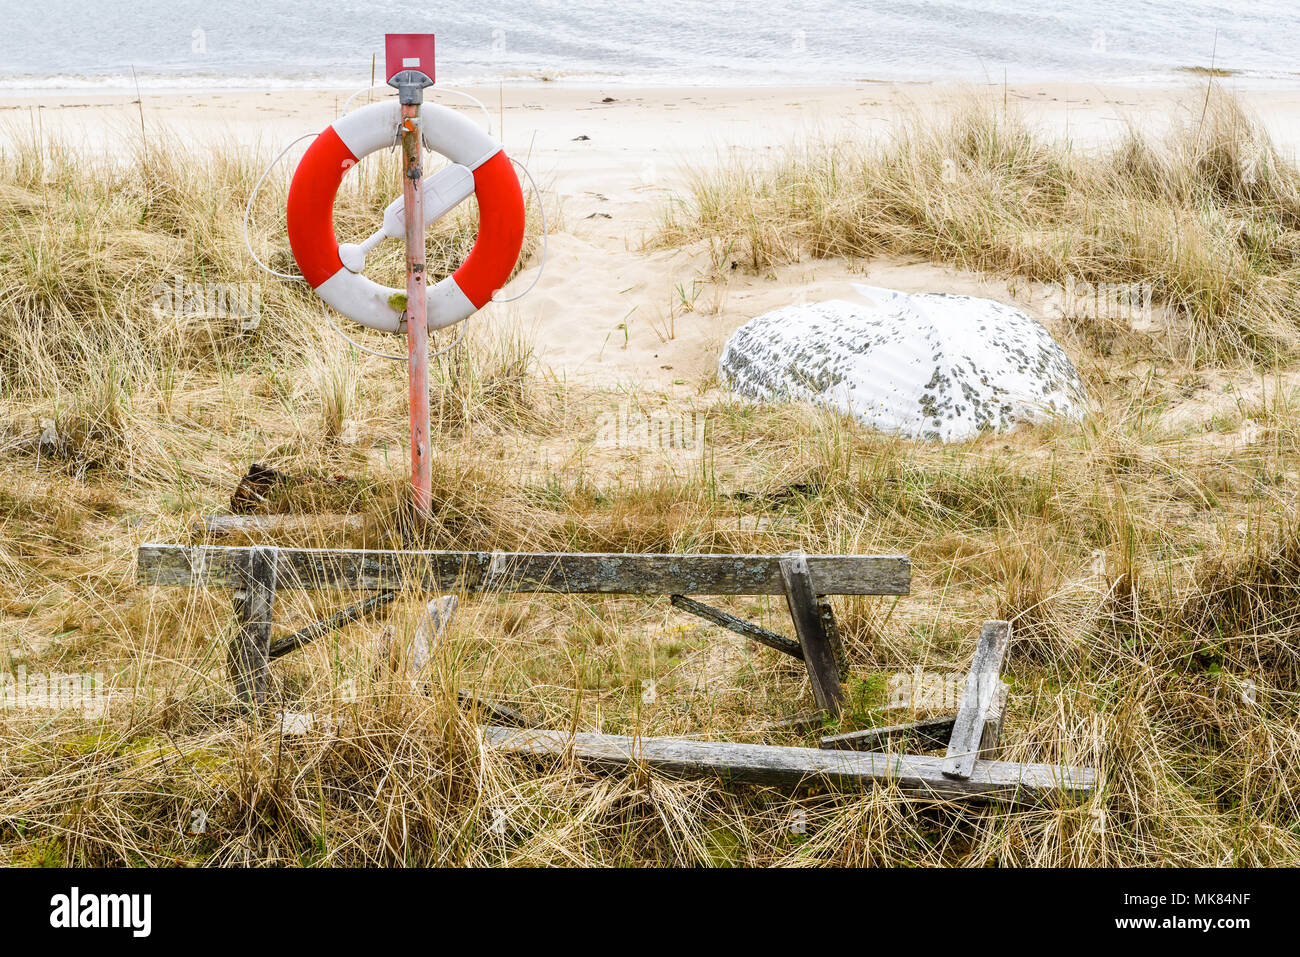 Ahus, Schweden. Rettungsring und Sand bedeckt Rettungsboot an einem Strand. Stockfoto